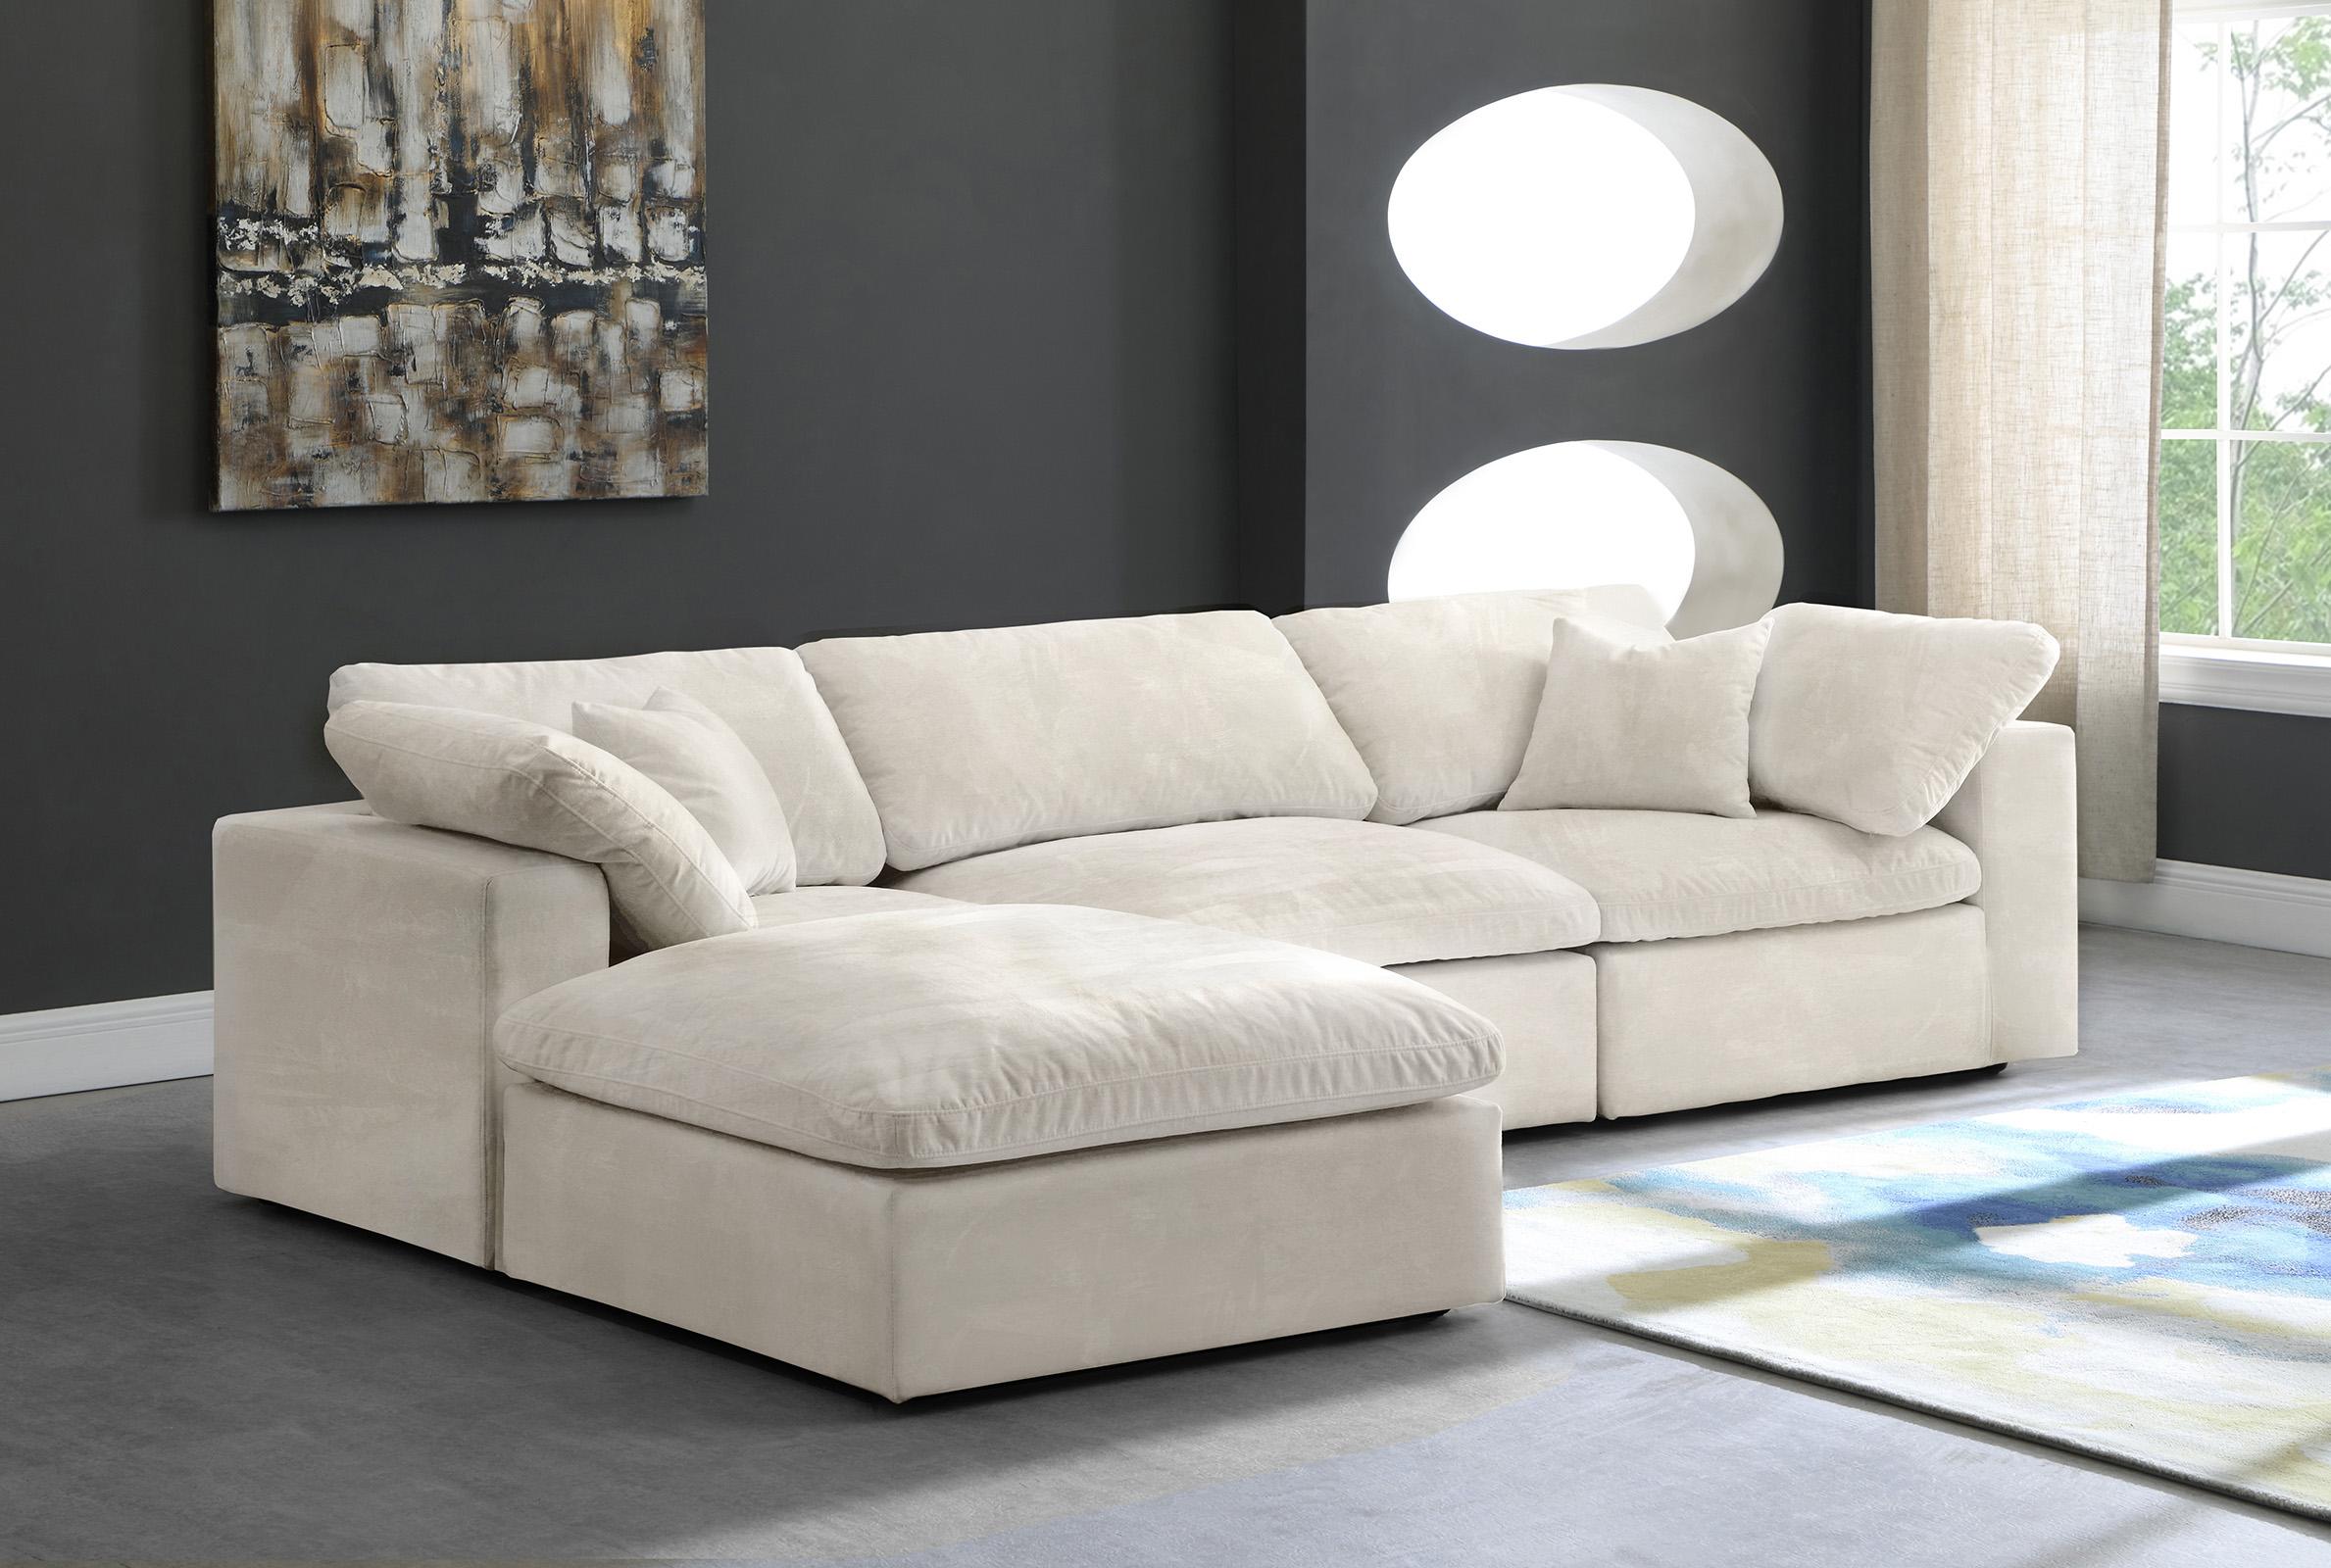 

    
Meridian Furniture 634Cream-Sec4A Modular Sectional Cream 634Cream-Sec4A
